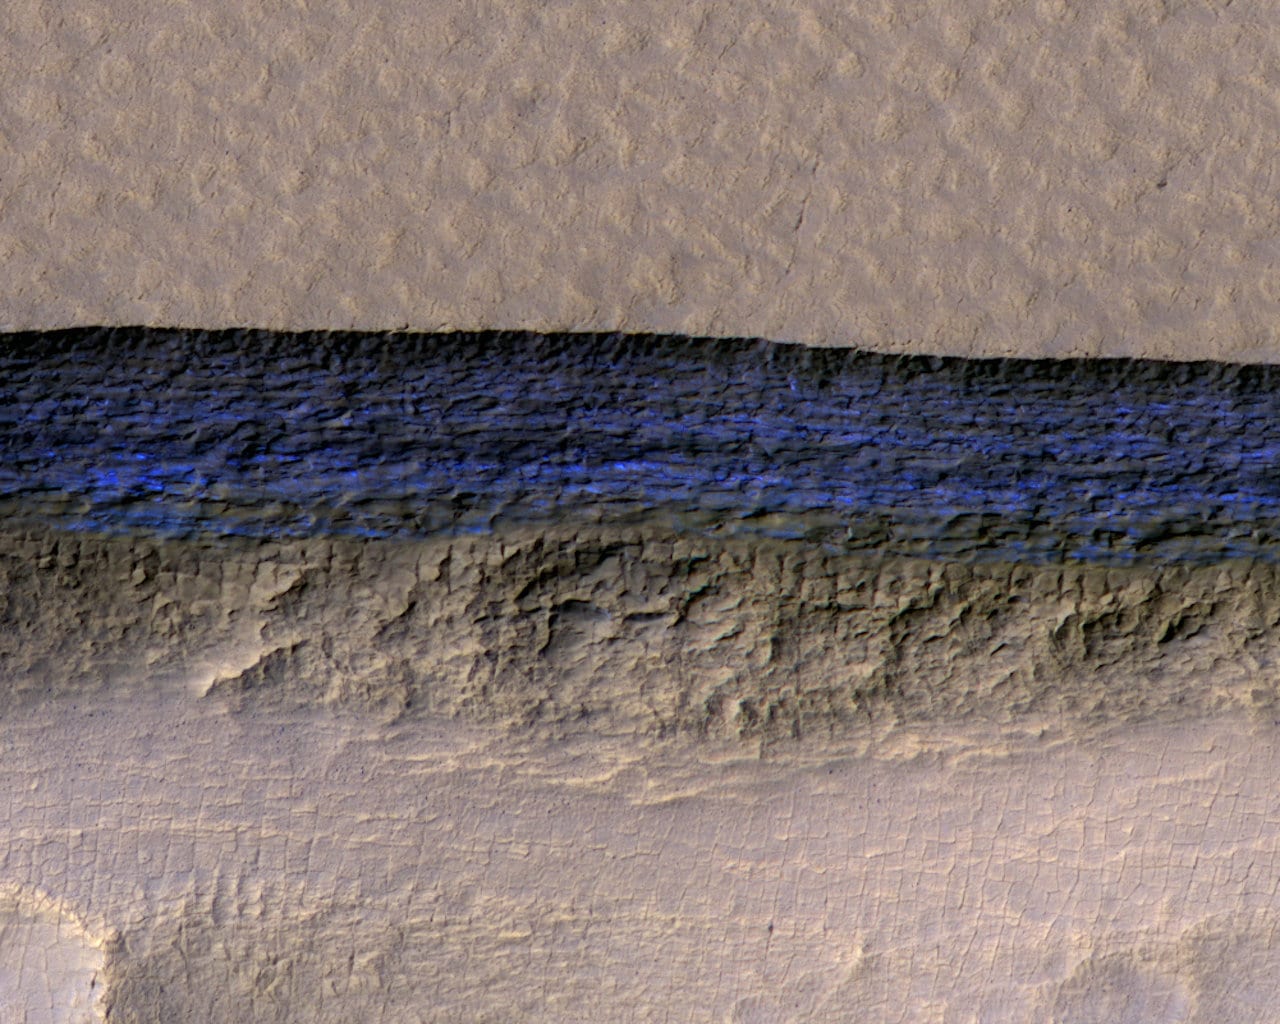 Descubren capas de hielo bajo la superficie de Marte